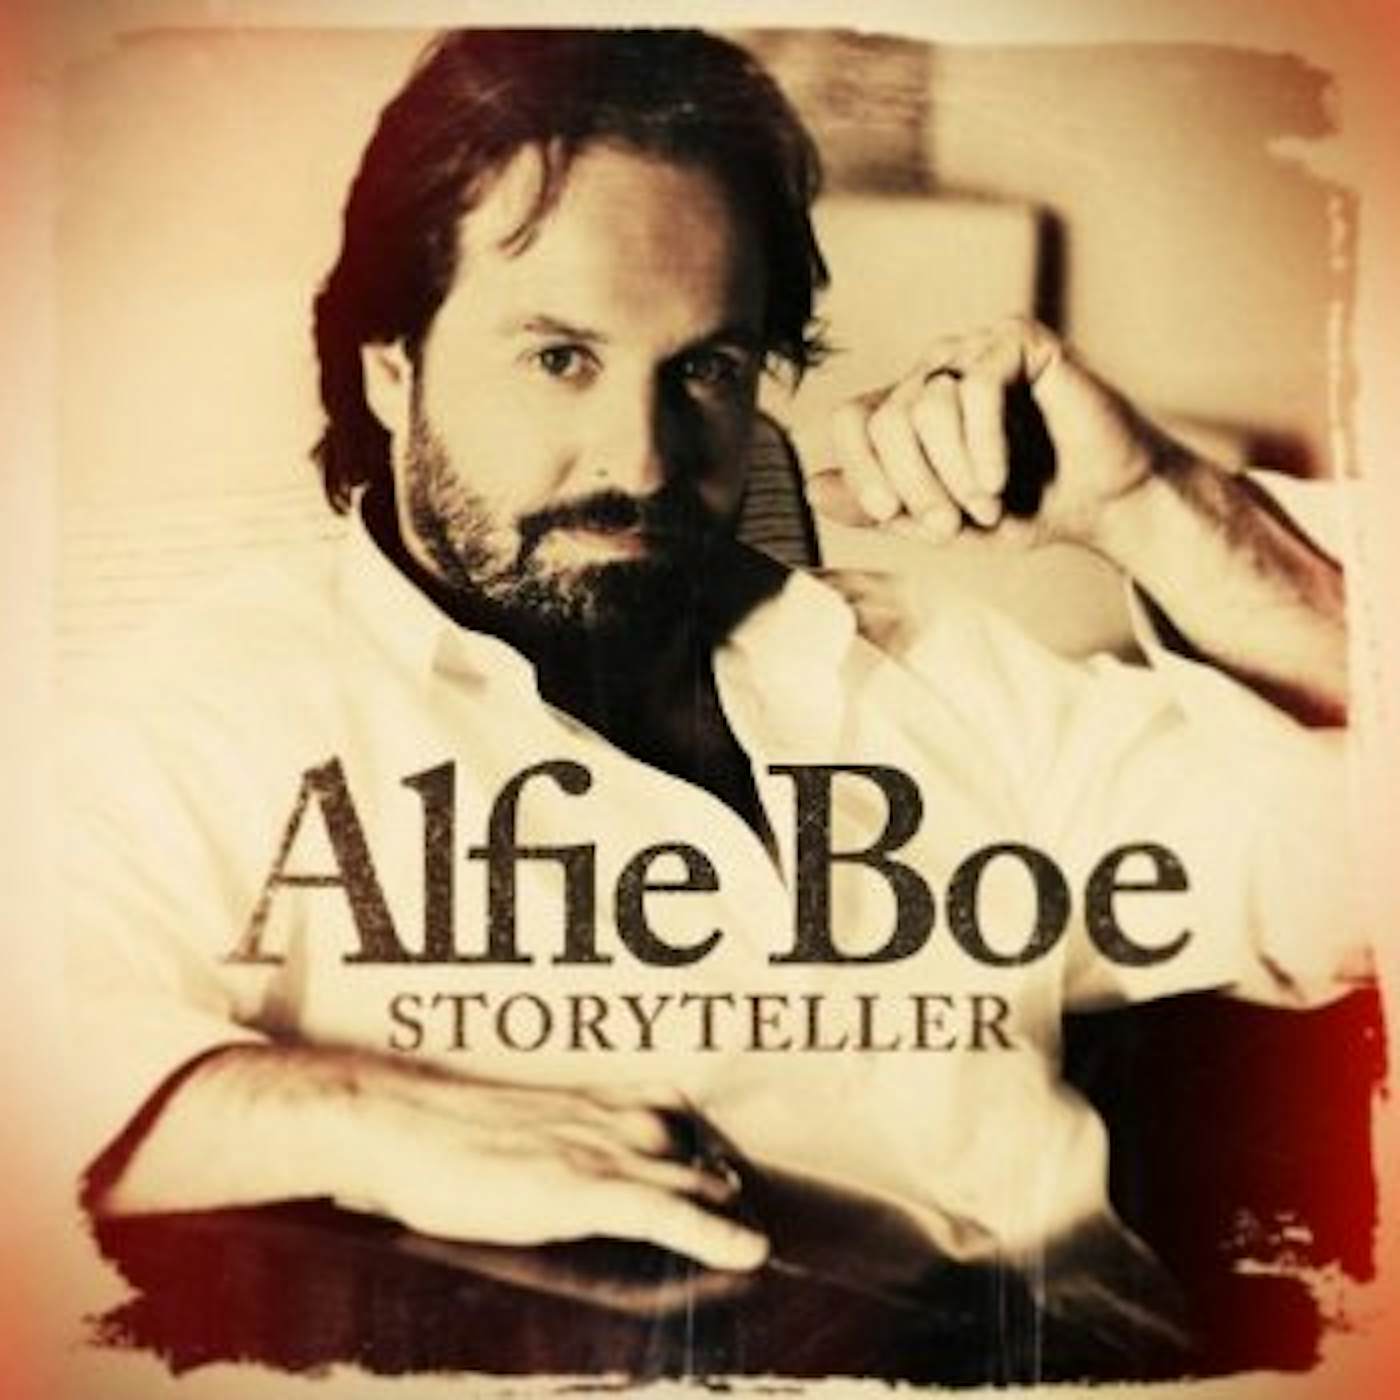 Alfie Boe STORYTELLER CD